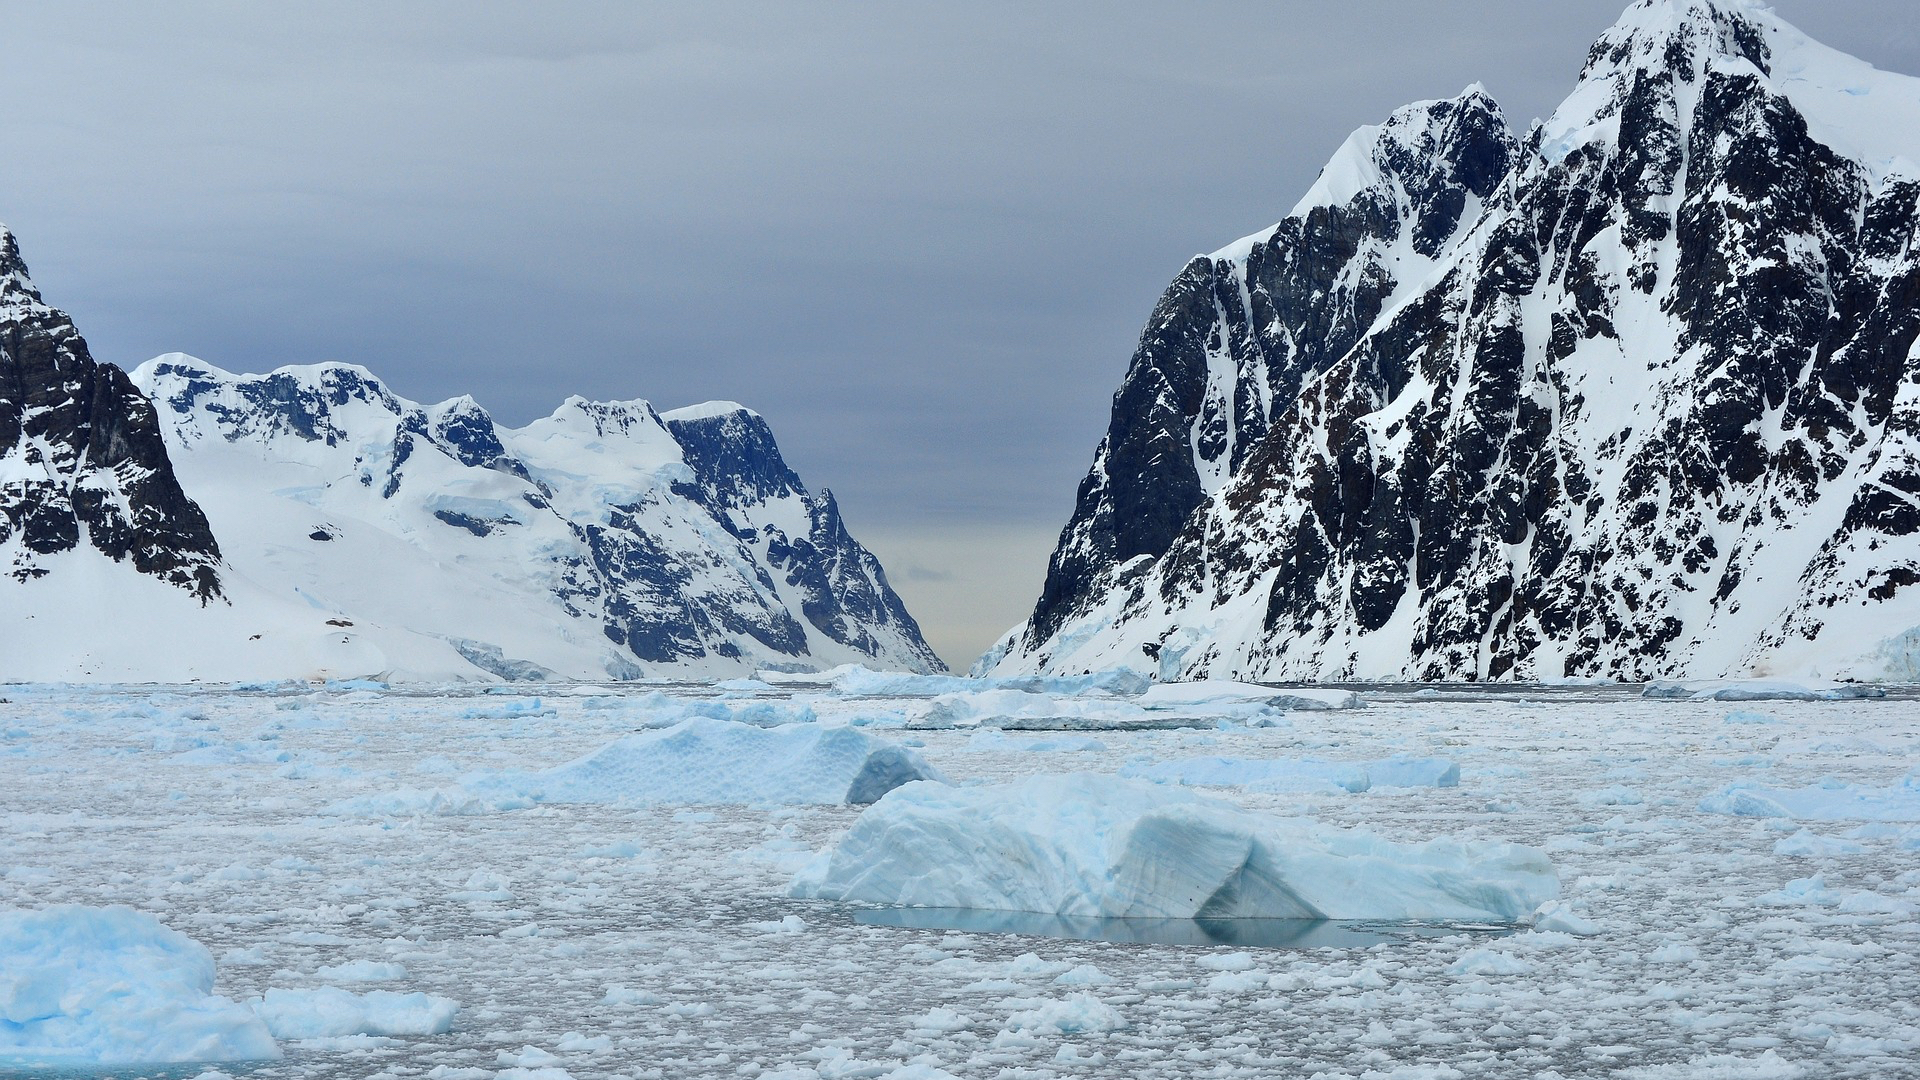 Ce Bruit Sinistre Sous La Banquise De L Antarctique Permet De Comprendre Son Passe Trouble